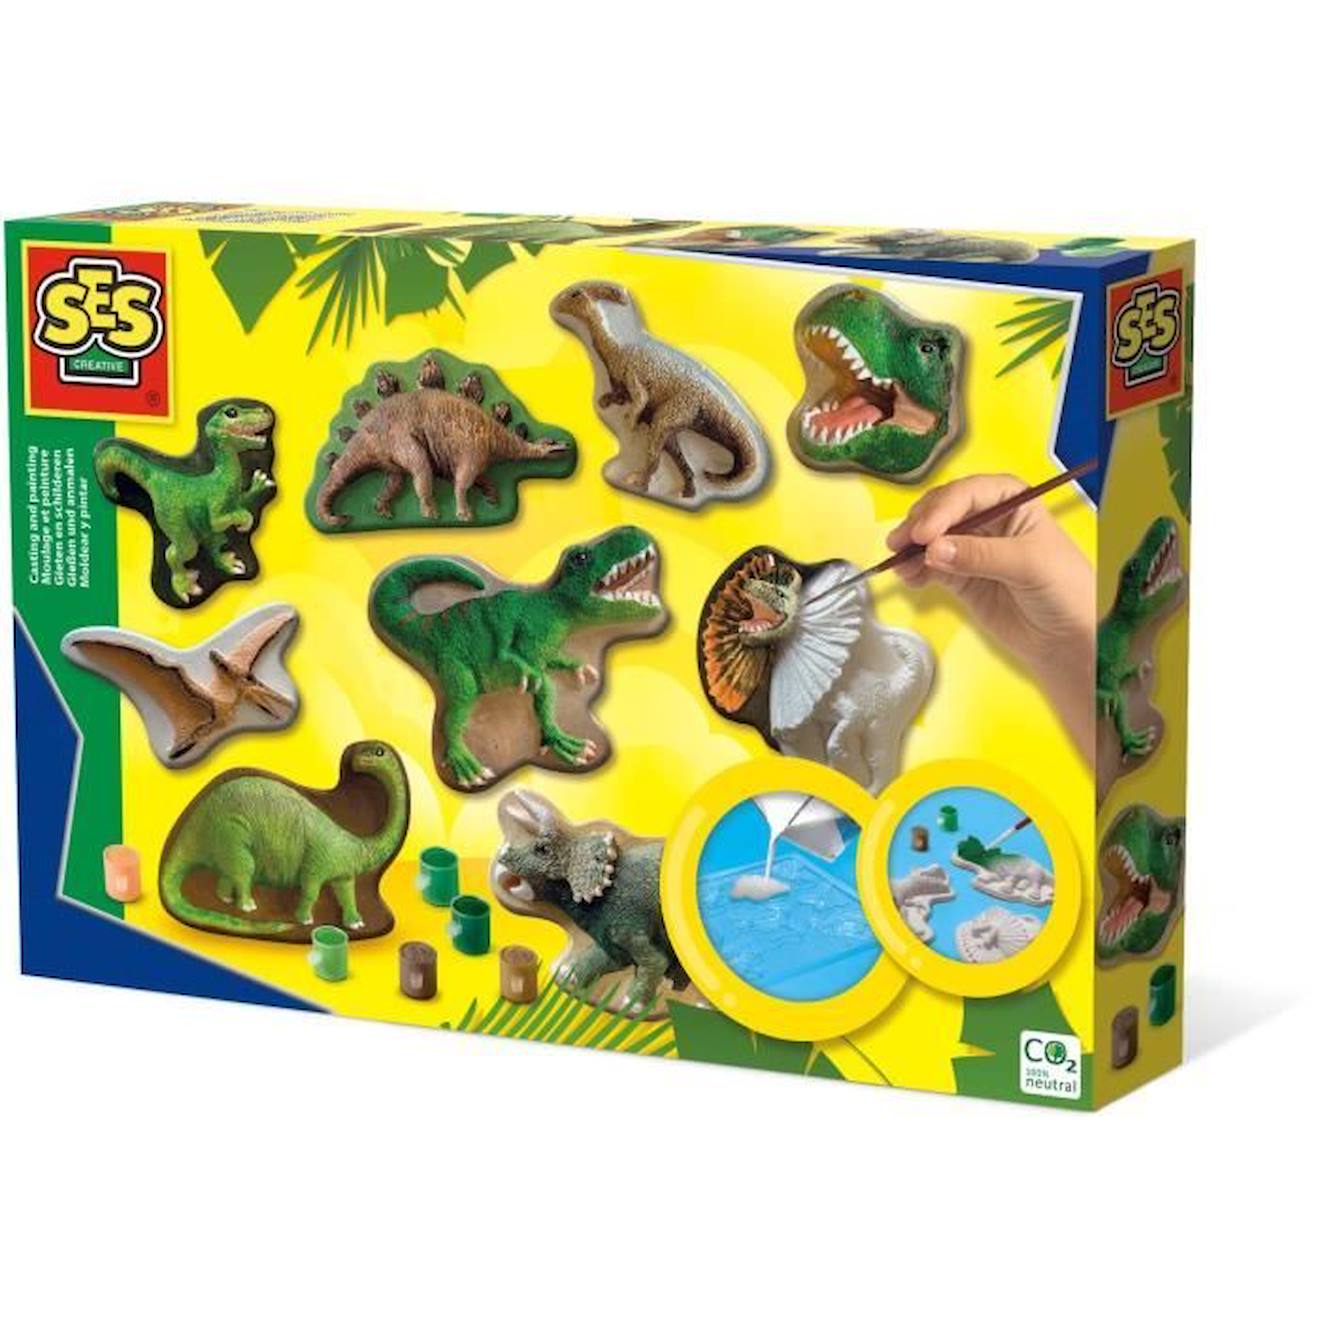 Kit créatif Le monde des dinosaures : 3 dinosaures de Mako Moulages